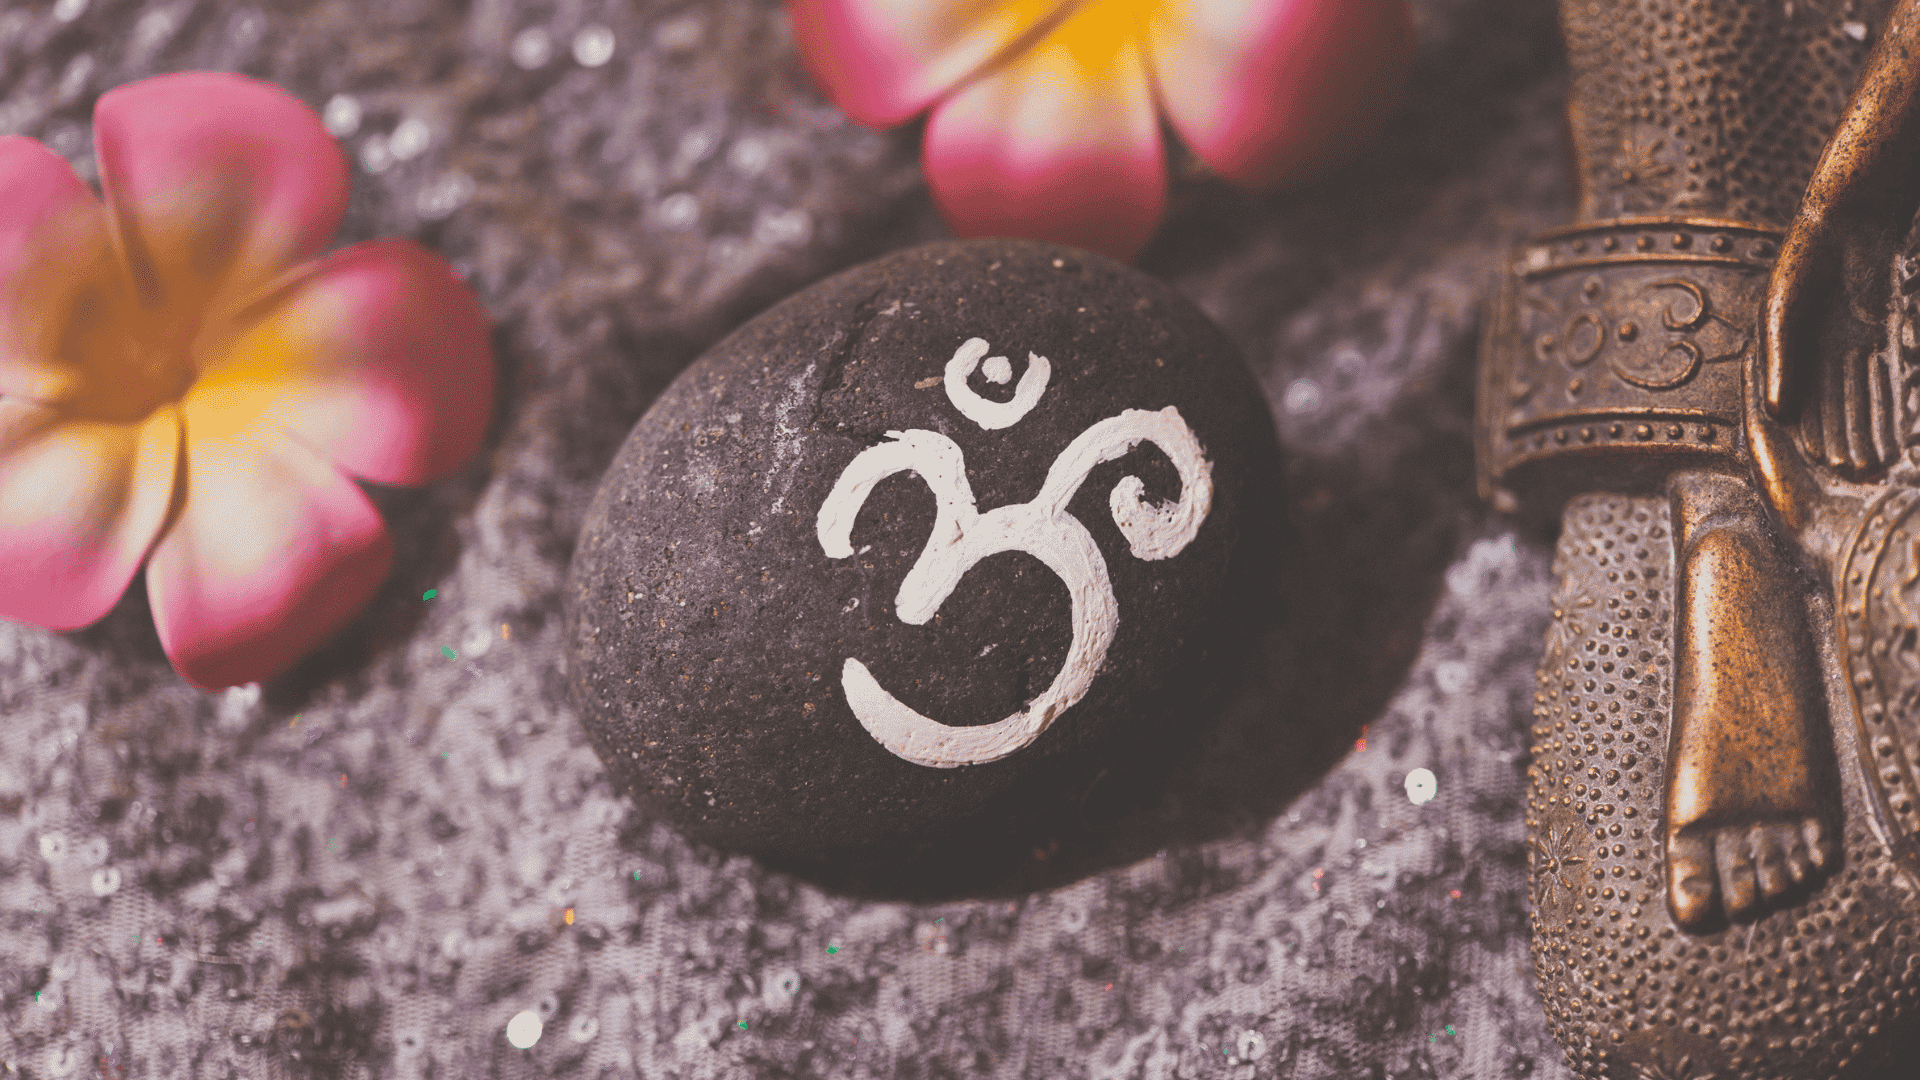  당신이 알아야 할 9가지 영적 상징, 그 의미와 각각의 사용법